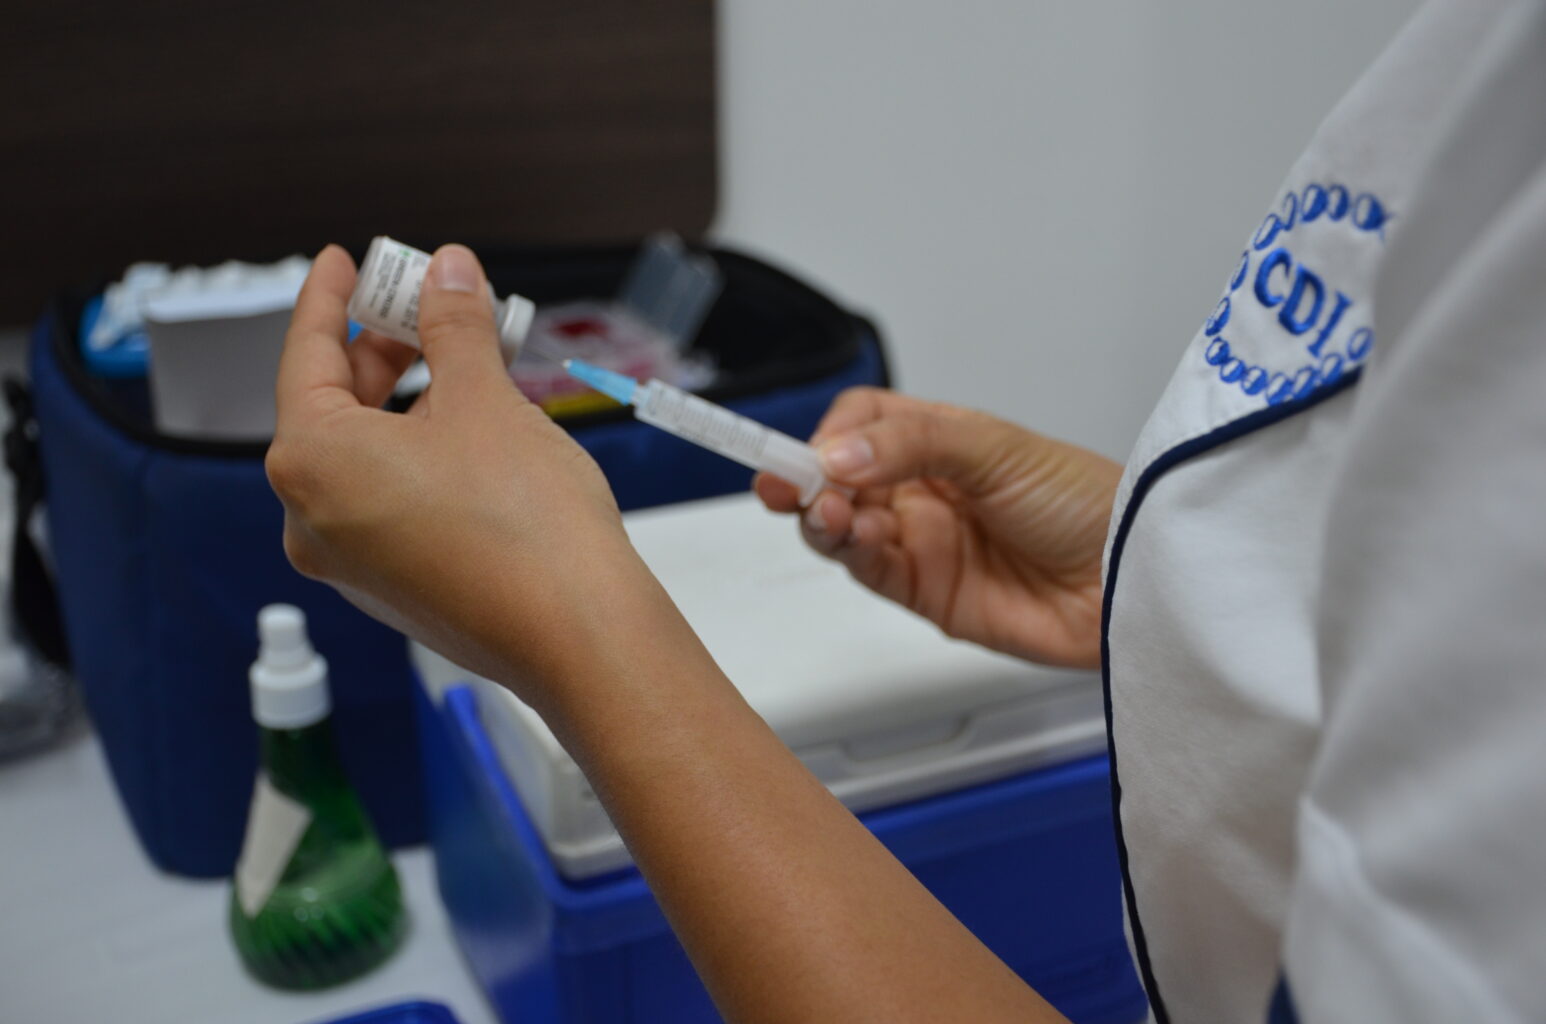 Enfermera del Centro de Diagnóstico de Enfermedades Infecciosas (CDI), aplicando una vacuna.